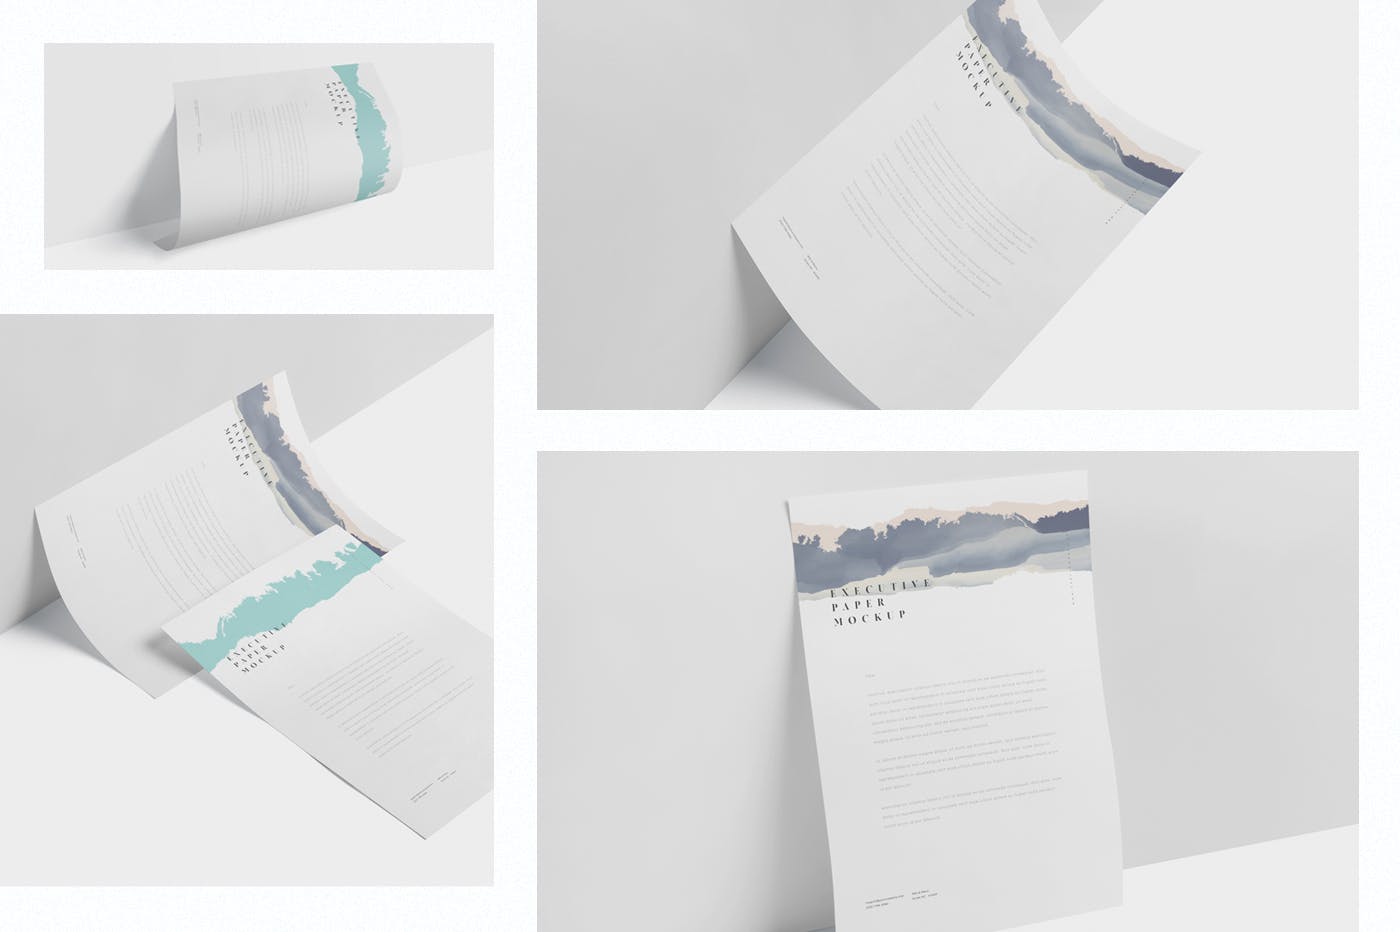 企业宣传单张设计效果图样机第一素材精选 Executive Paper Mockup – 7×10 Inch Size插图(1)